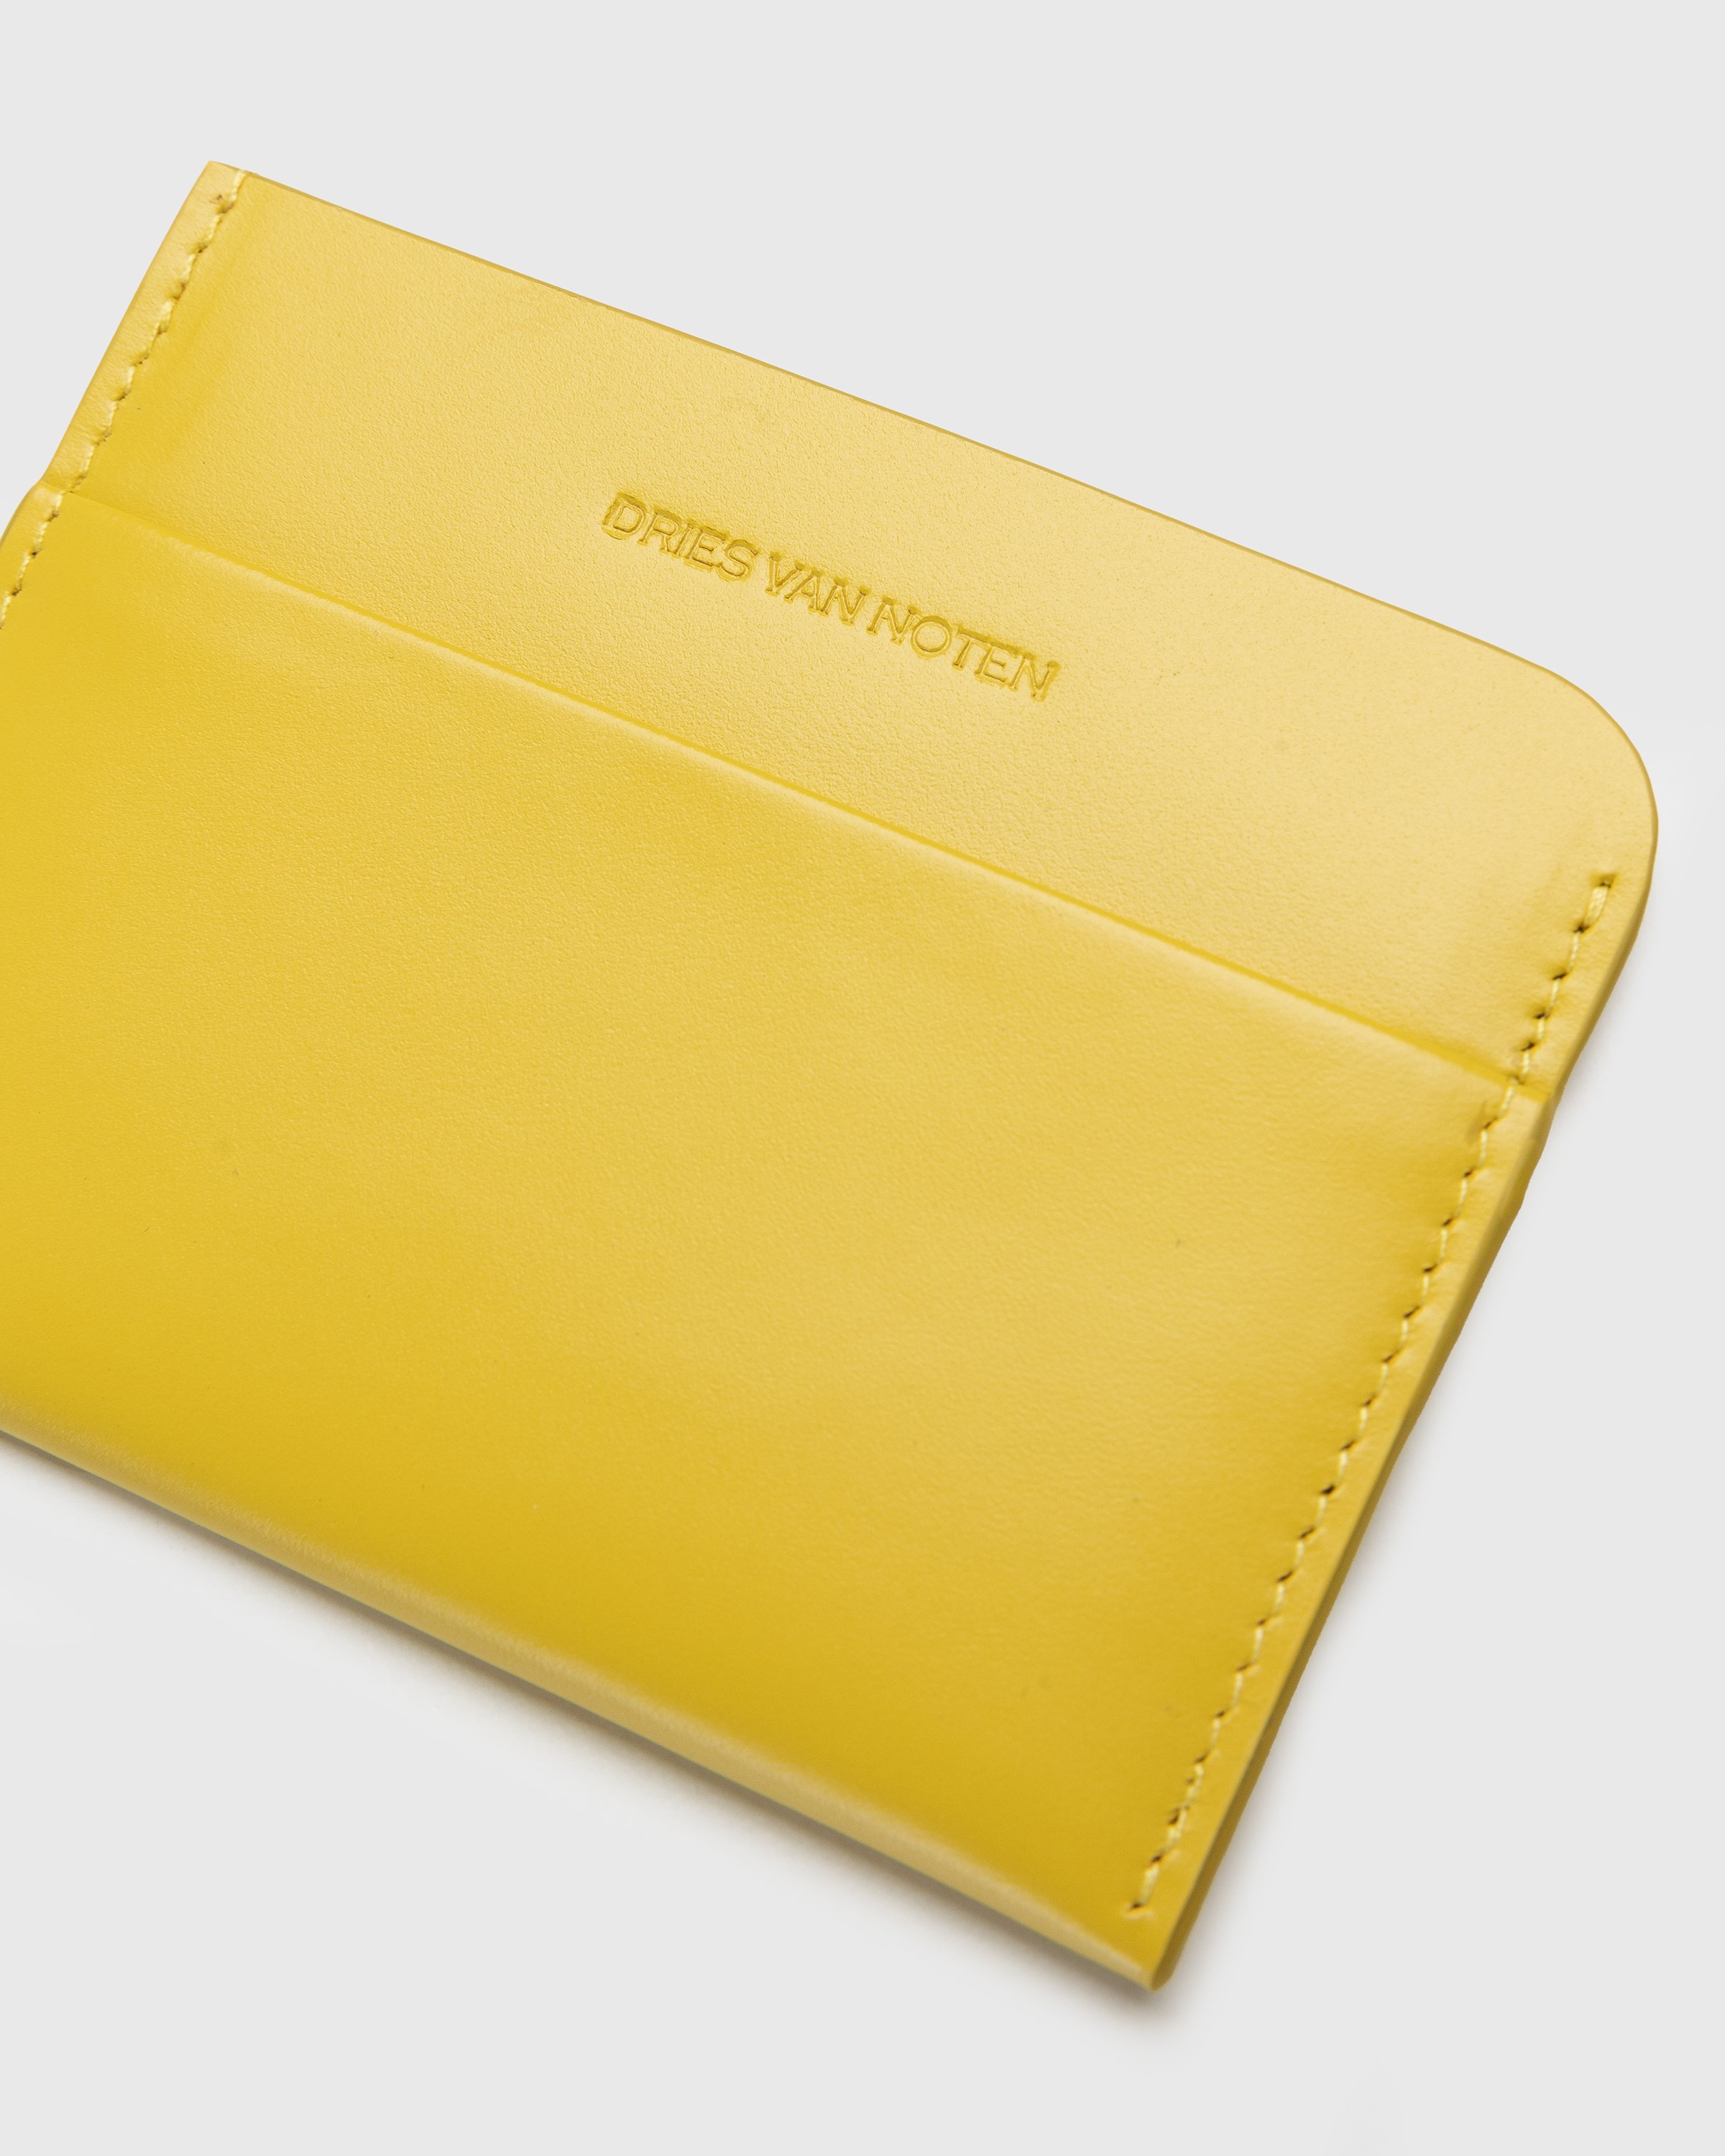 Dries van Noten - Cardholder Yellow - Accessories - Yellow - Image 4